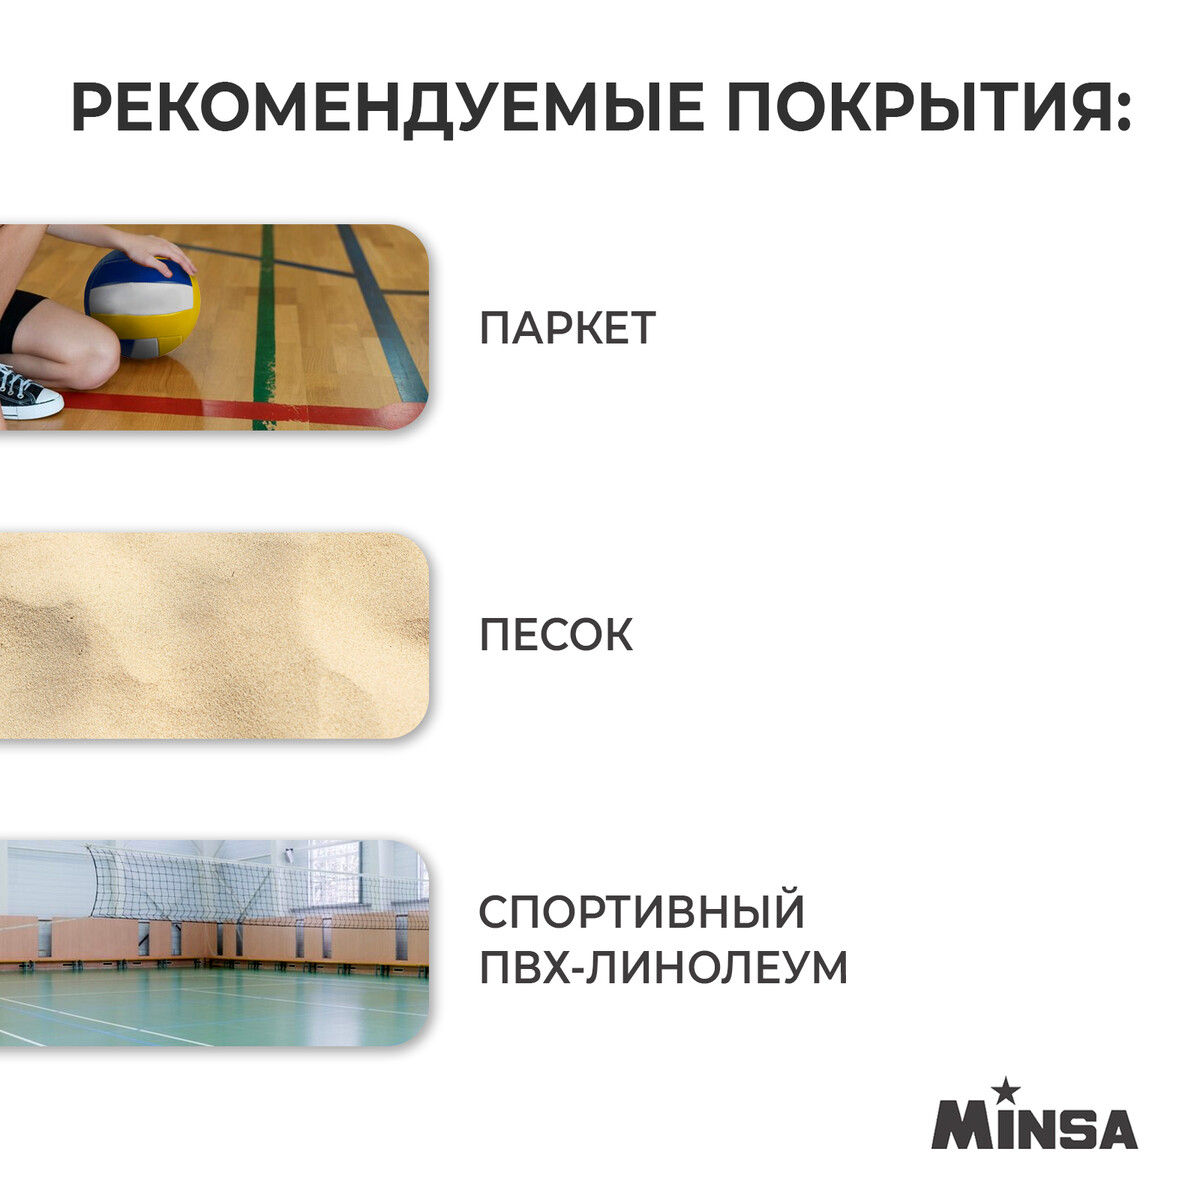 фото Мяч волейбольный minsa smr-058, пвх, машинная сшивка, 18 панелей, р. 5